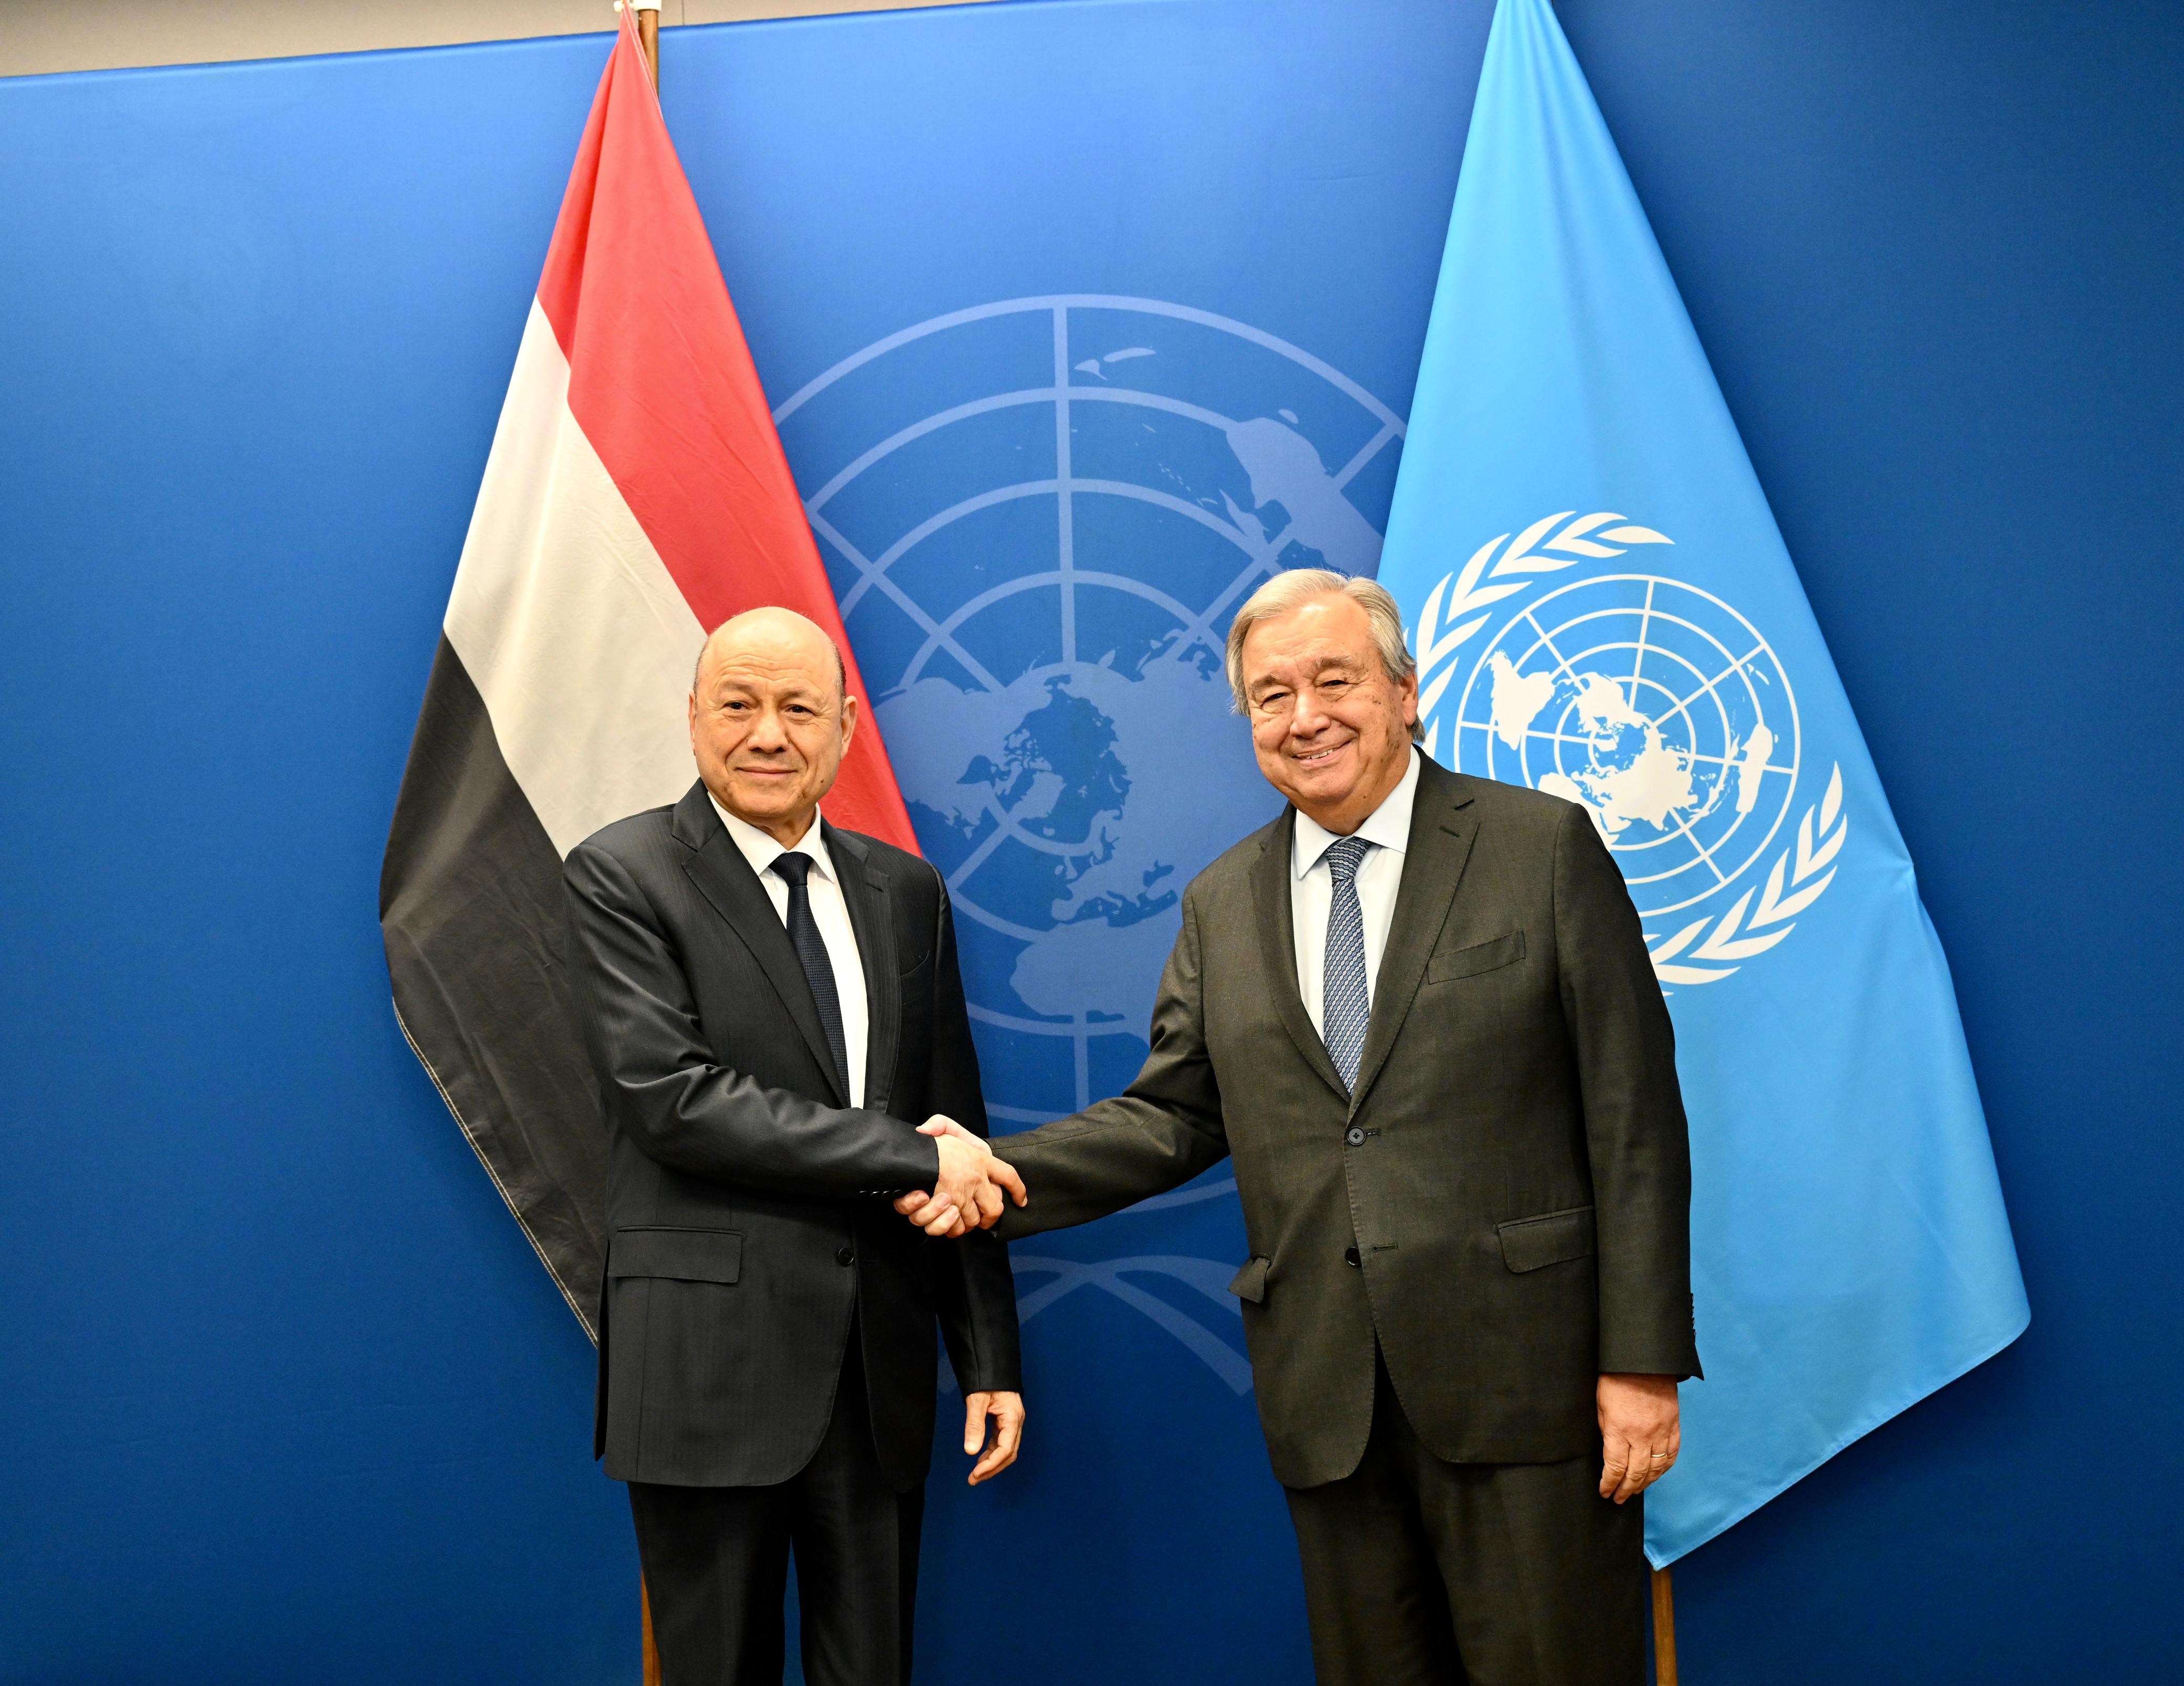 رئيس مجلس القيادة الرئاسي يبحث وامين عام الأمم المتحدة الوضع الانساني وجهود احلال السلام في اليمن ، 23 سبتمبر 2023